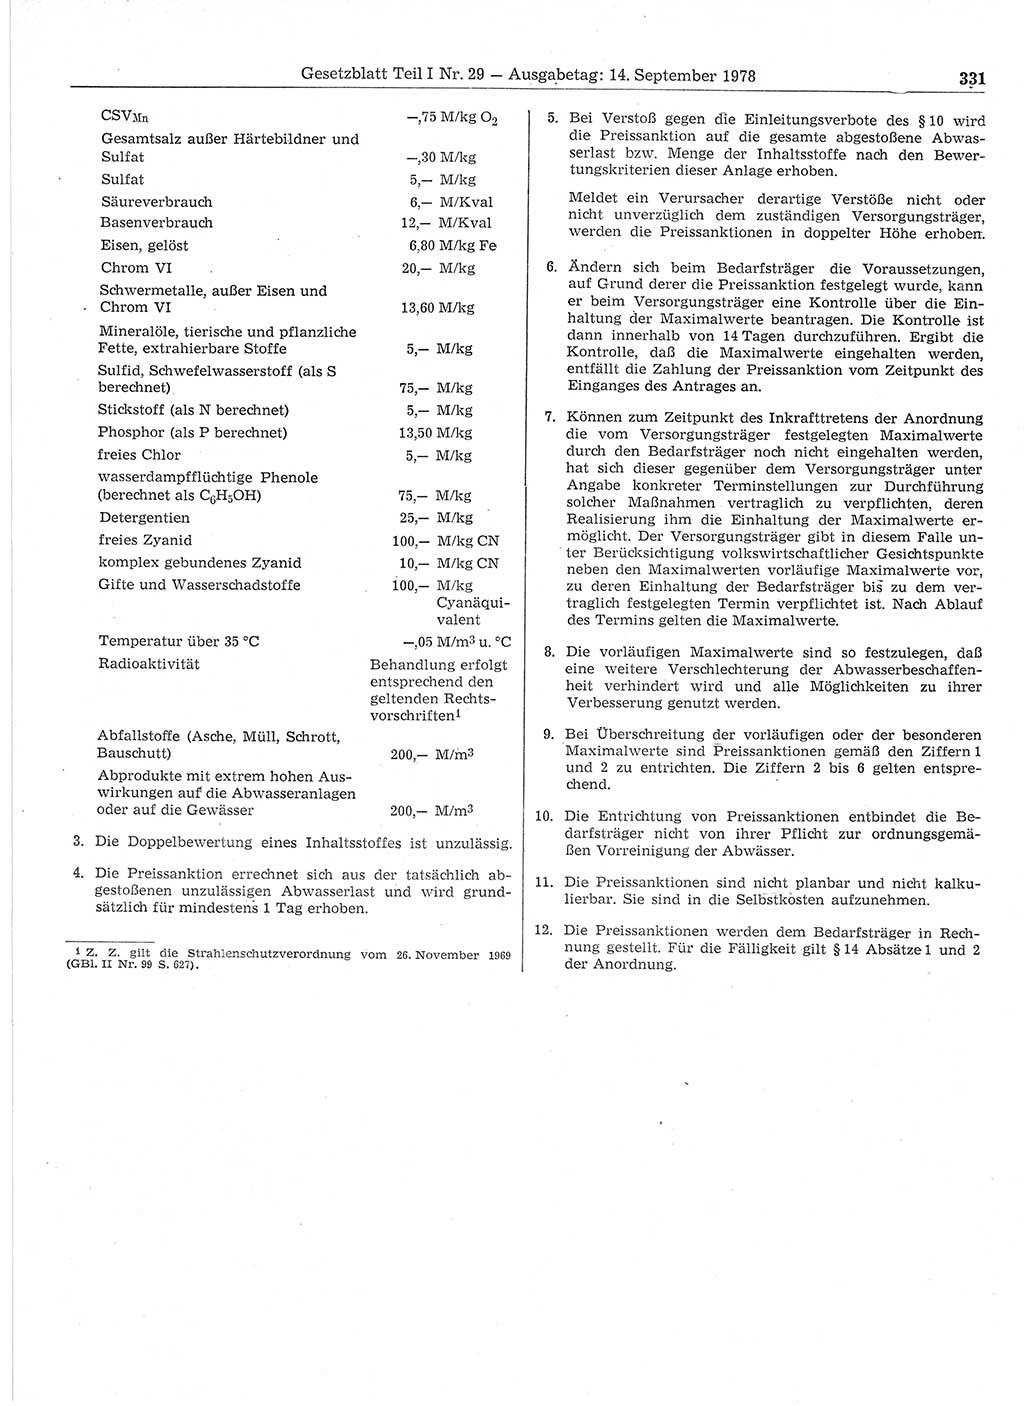 Gesetzblatt (GBl.) der Deutschen Demokratischen Republik (DDR) Teil Ⅰ 1978, Seite 331 (GBl. DDR Ⅰ 1978, S. 331)